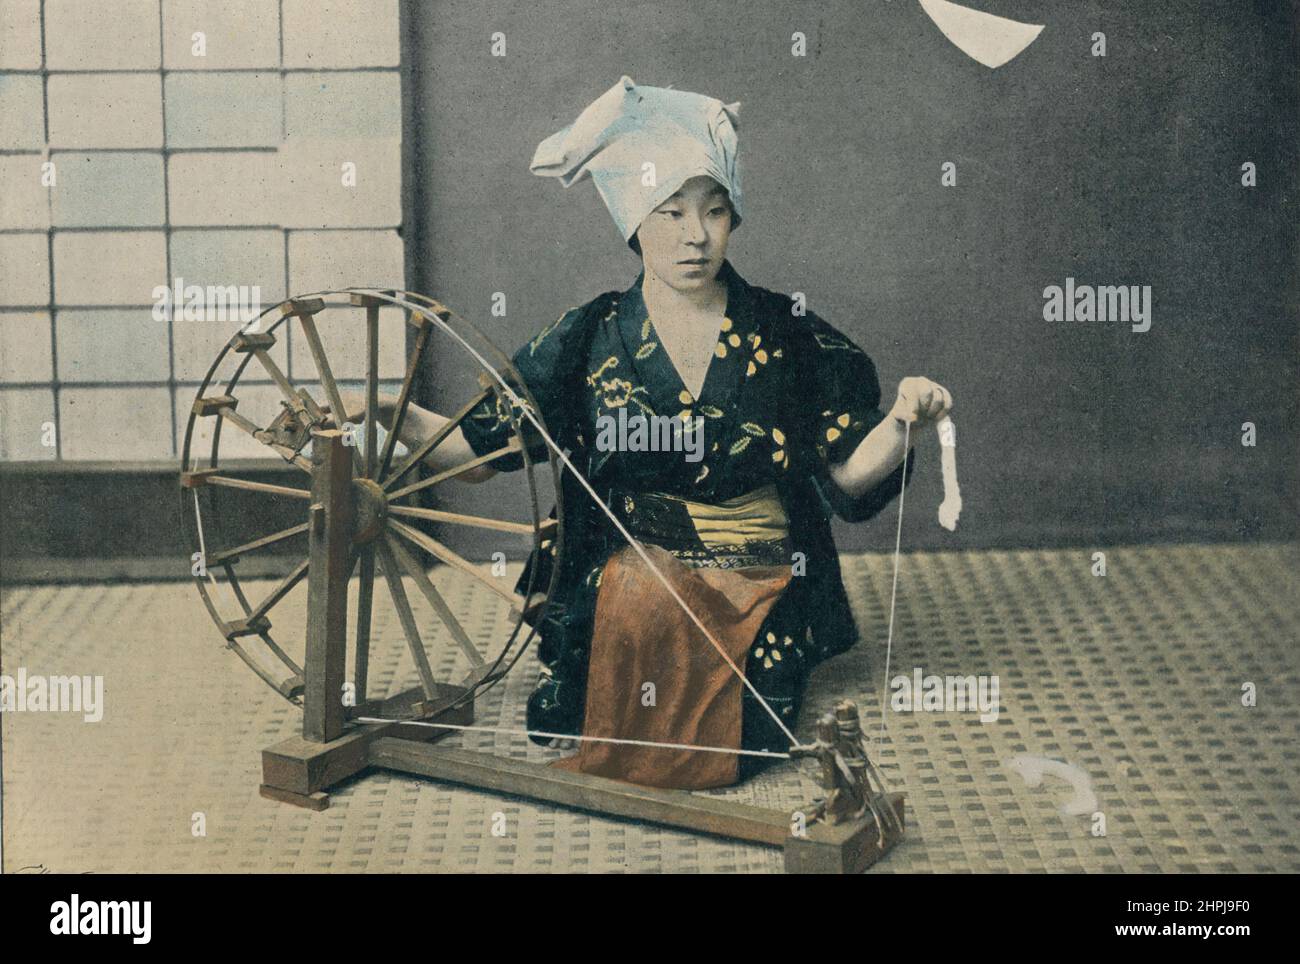 DATEIVERWENDUNG DE-COTON. Au Japon III 1895 - 1900 (2) - 19. Jahrhundert französischer Farbfotografiedruck Stockfoto